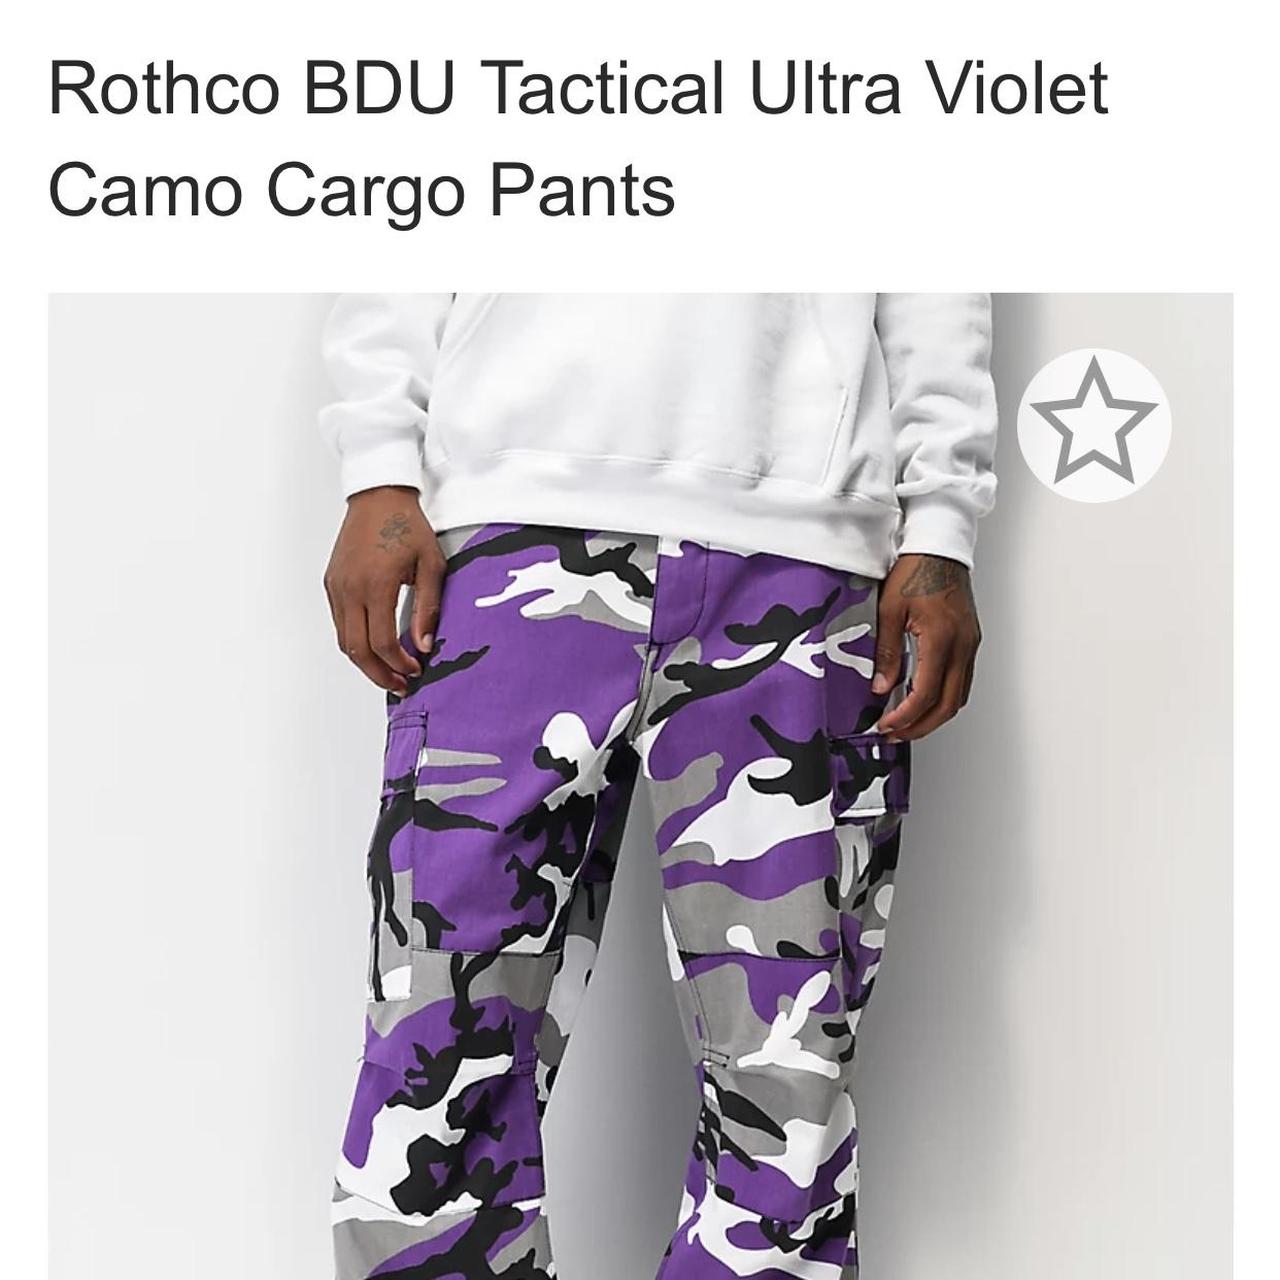 Rothco BDU Tactical Ultra Violet Camo Cargo Pants